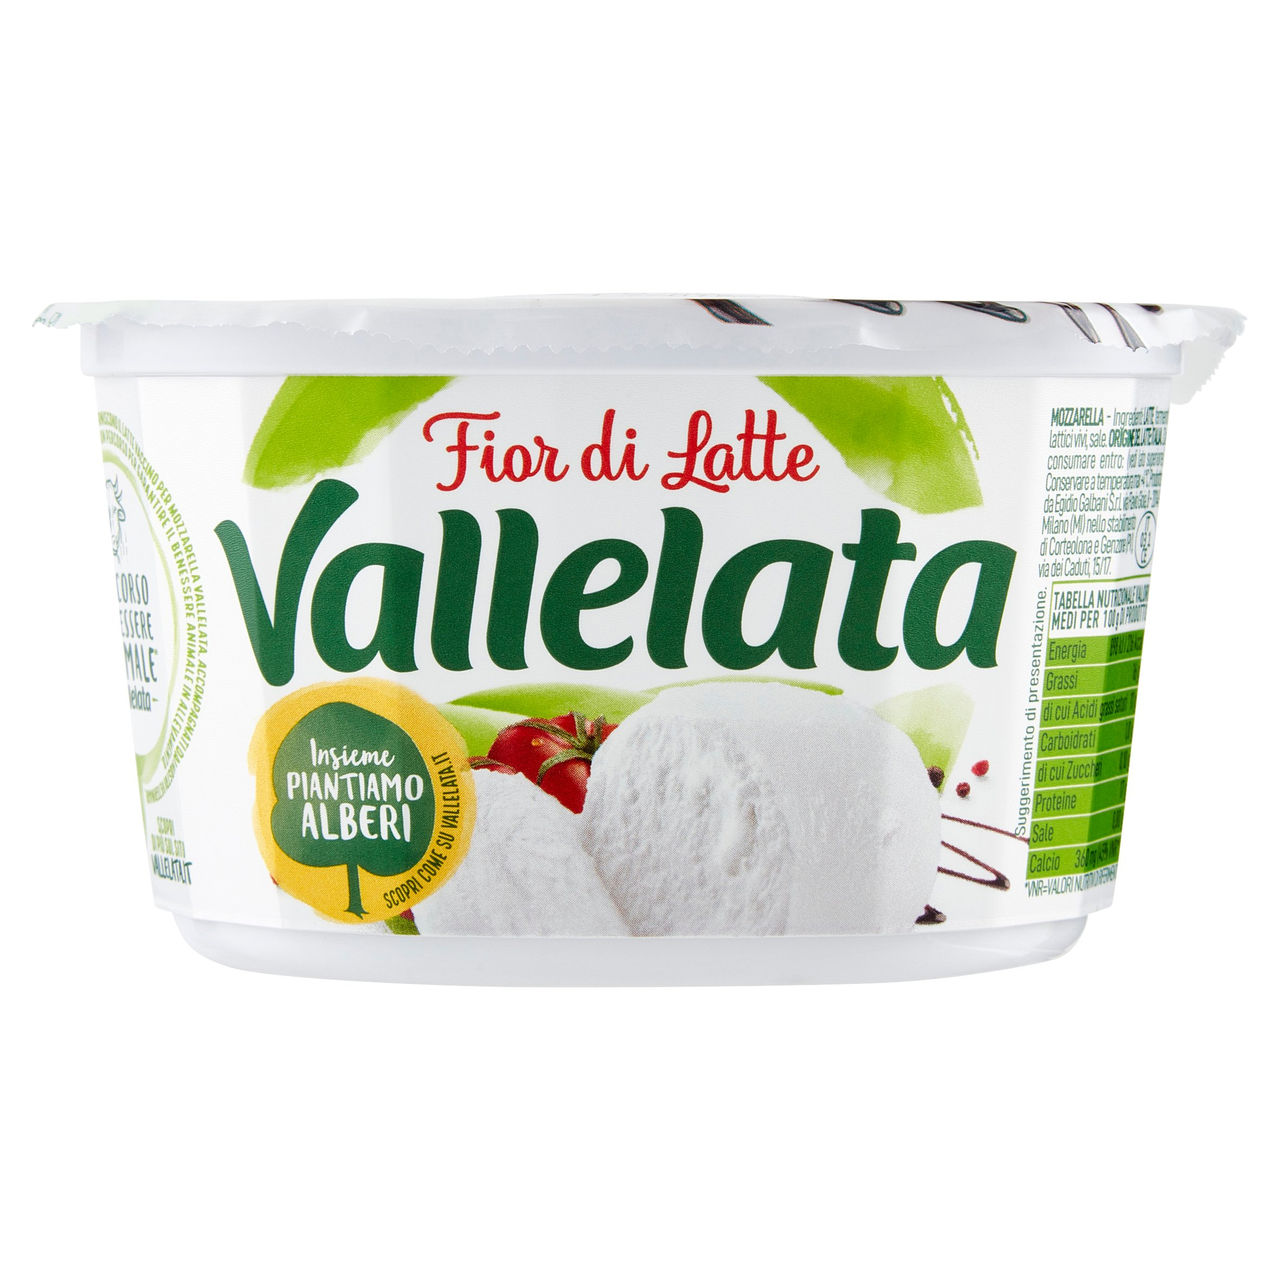 Vallelata Fior di Latte Mozzarella Fresca 125 g